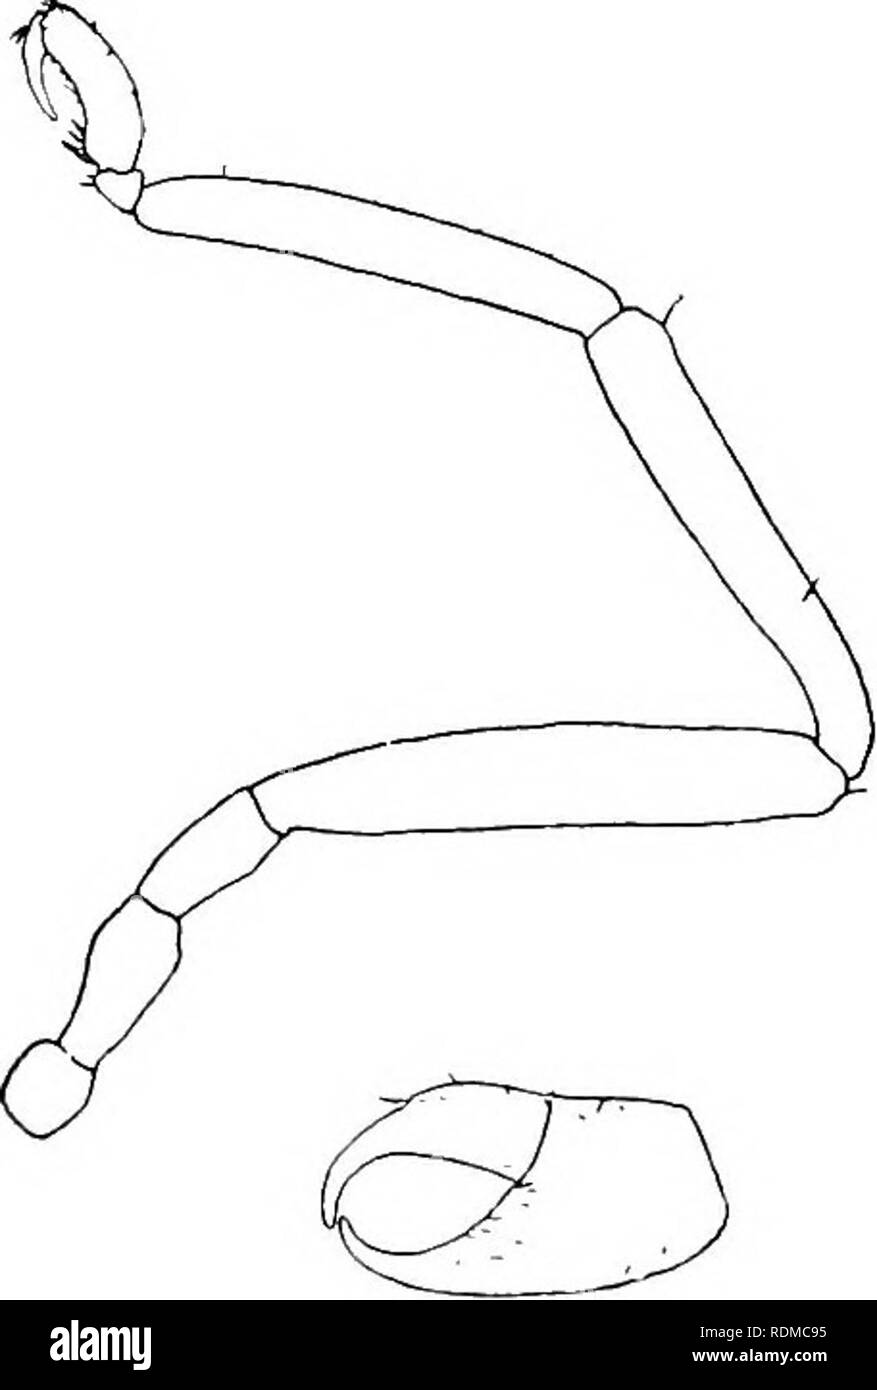 . Il Cambridge storia naturale. Zoologia. 538 PYCNOGONIDA dieci specie, Indie Orientali e Australia); Pallene gruhii, Hoek (Fhoxichilidium sp., Grube, 1869), è probabilmente congeneric. Palhnopsis, Wilson (1881): appendice I. 2-raccordare; Appendice II. rudimentale, 1-raccordare; Appendice III. clawless; griffe ausiliario presente; forme slanciate, inclusi alcuni in precedenza Phoxiehilidium; circa quindici specie in tutto il mondo. Pallene rlimorpha, Hoek, da Kerguelen, con 4-palpi articolati, merita una nuova denominazione generica. P. longiceps, Bohm, dal Giappone, con rudimentali 2-palpi articolati nel maschio è Foto Stock